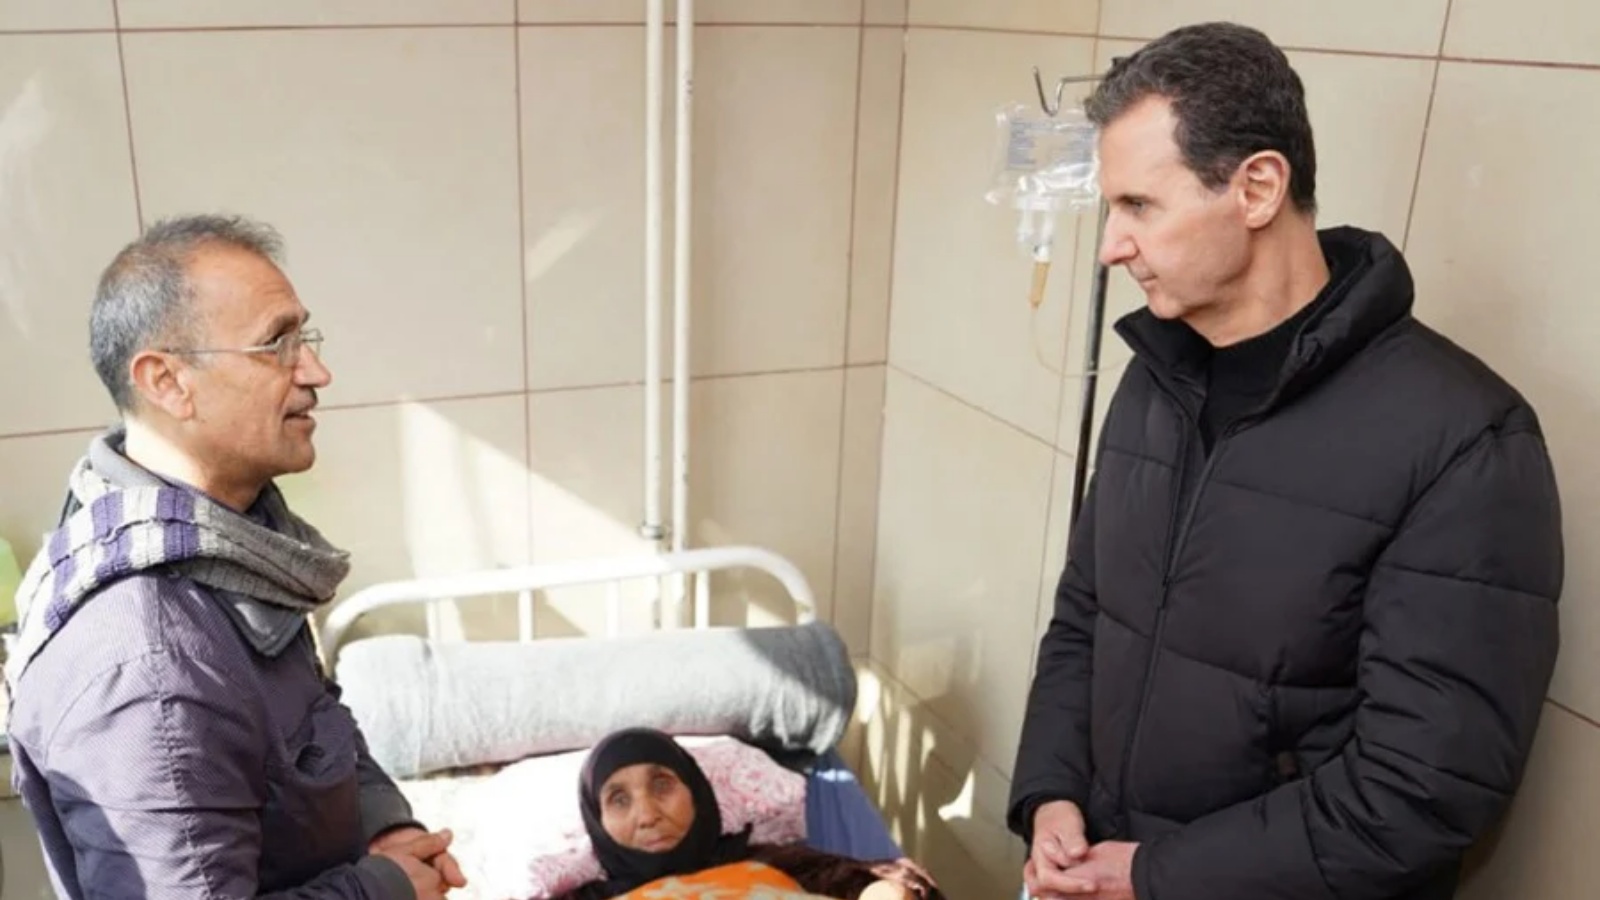 الرئيس السوري بشار الأسد (إلى اليمين) يزور أحد الجرحى الناجين من الزلزال الذي ضرب تركيا وسوريا ، في أحد مستشفيات مدينة حلب شمال سوريا